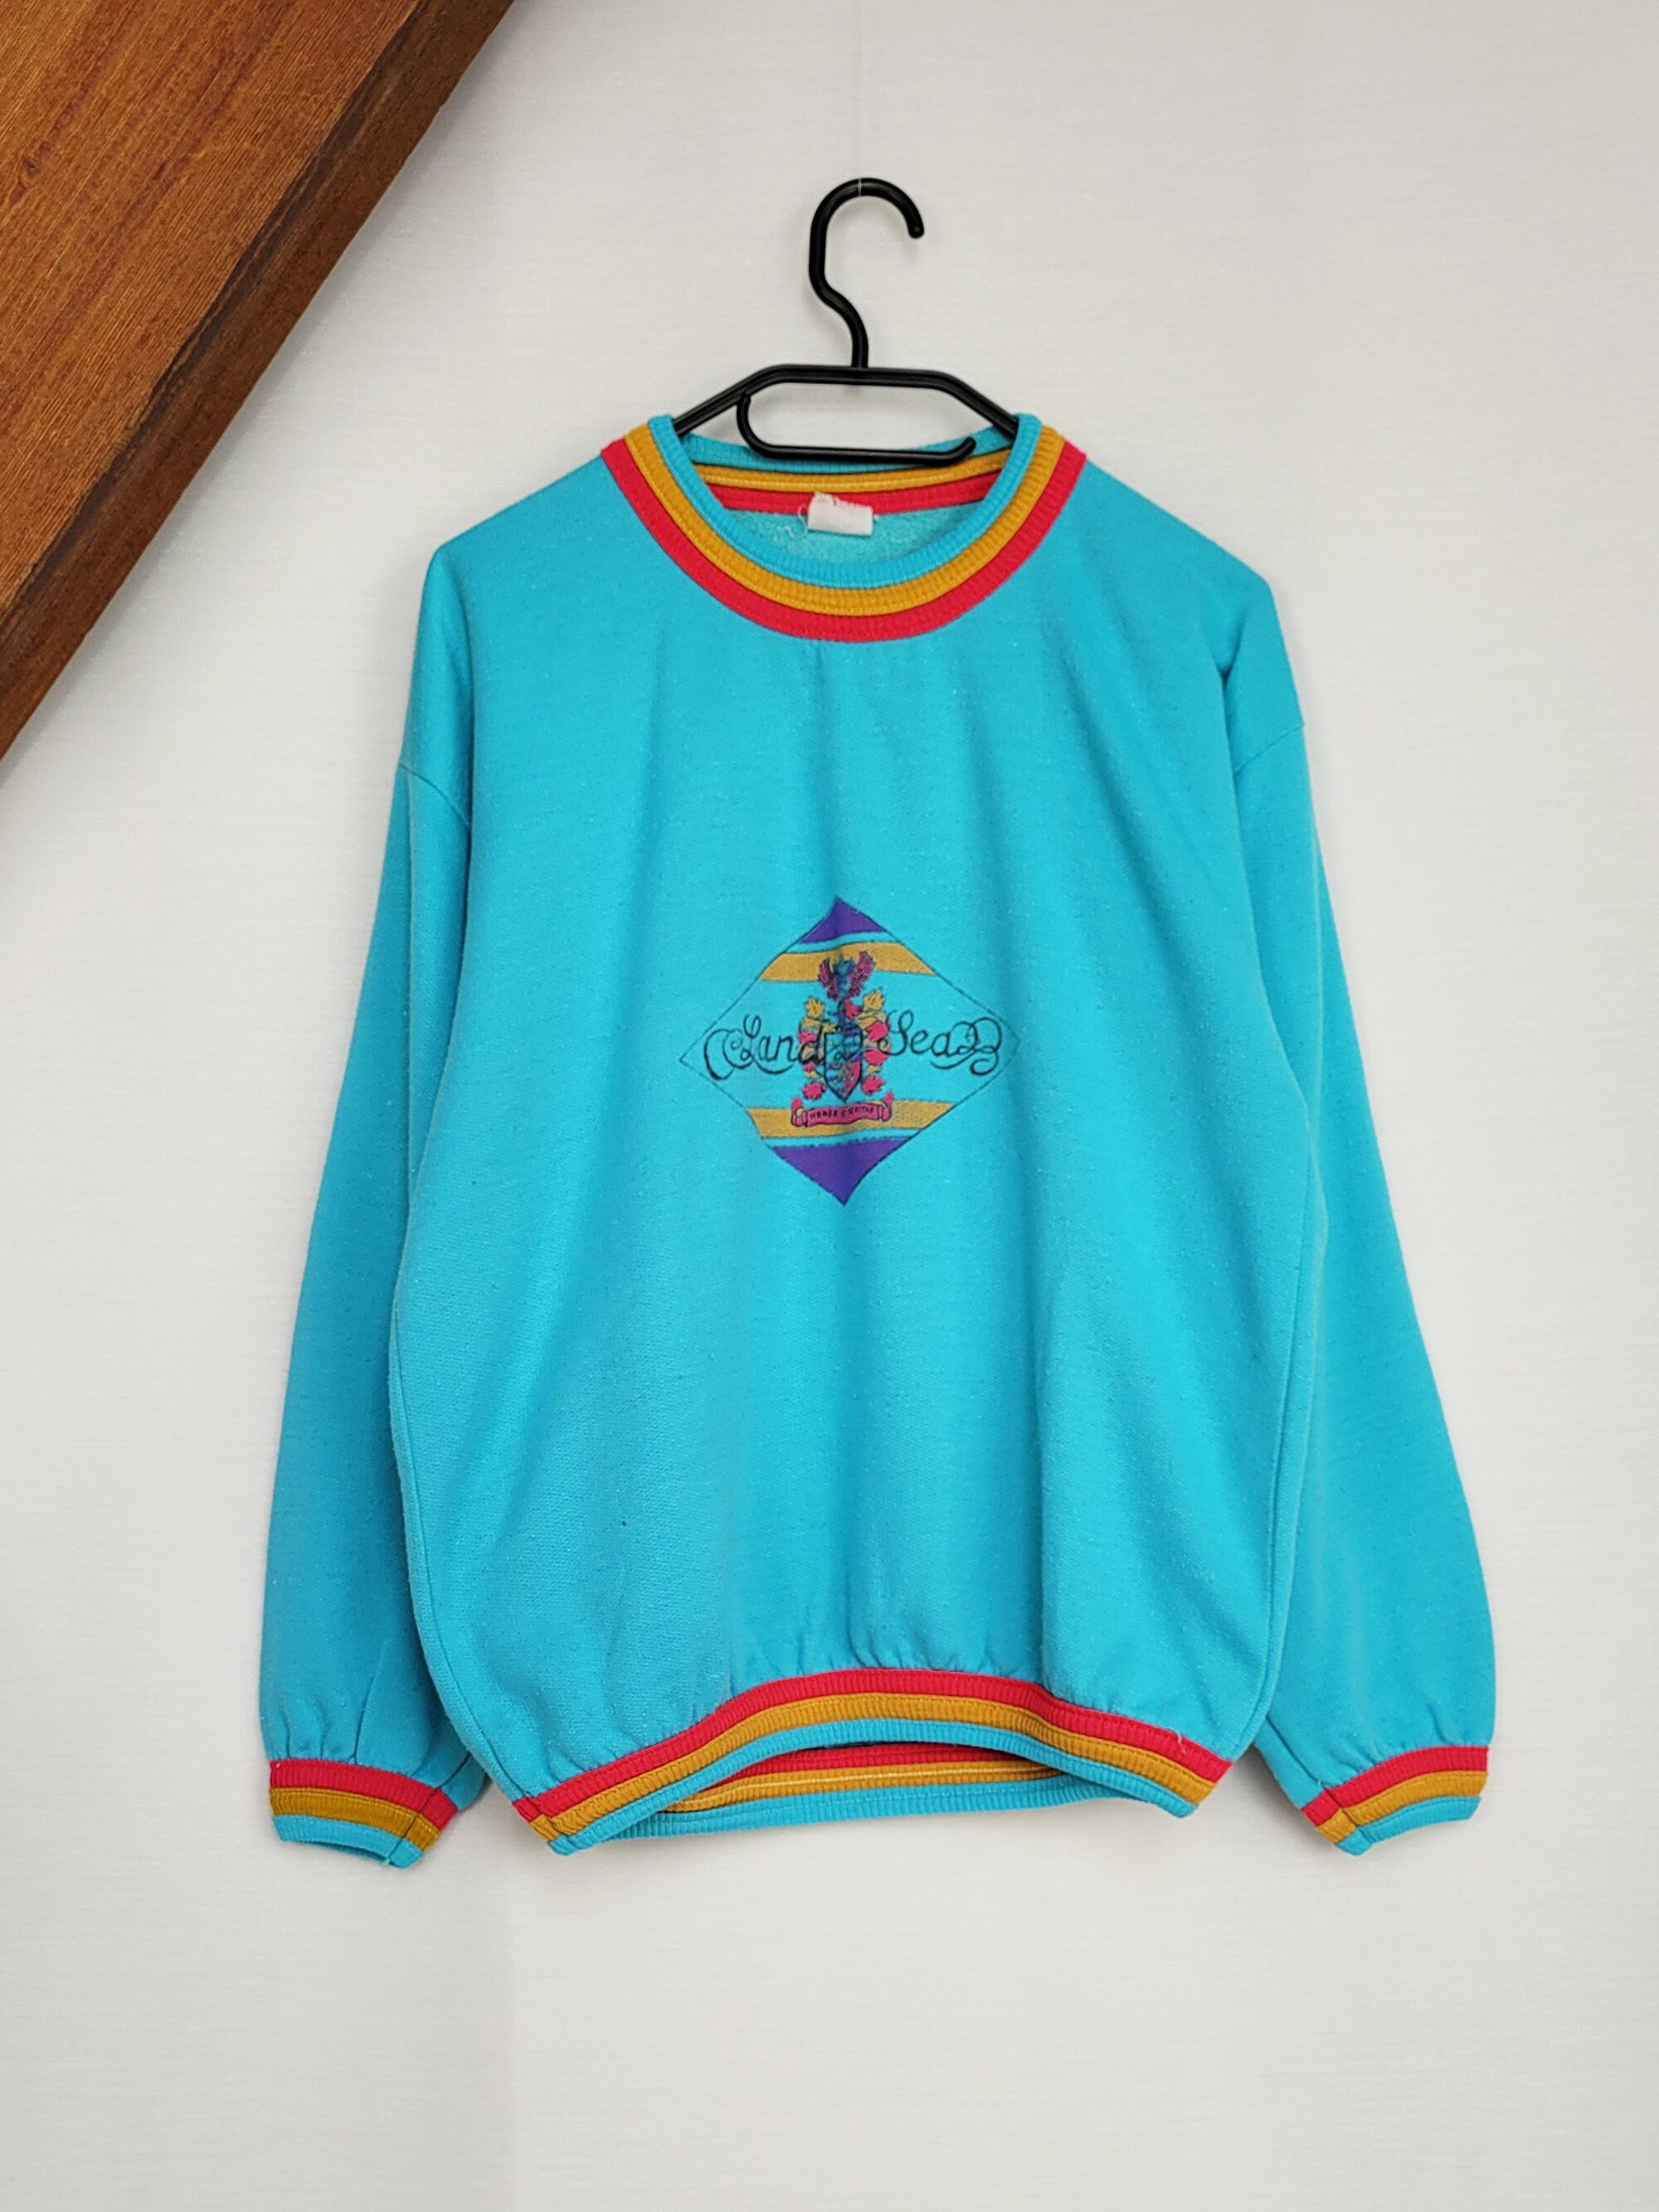 Vintage 90s blue minimalist oversized sweatshirt